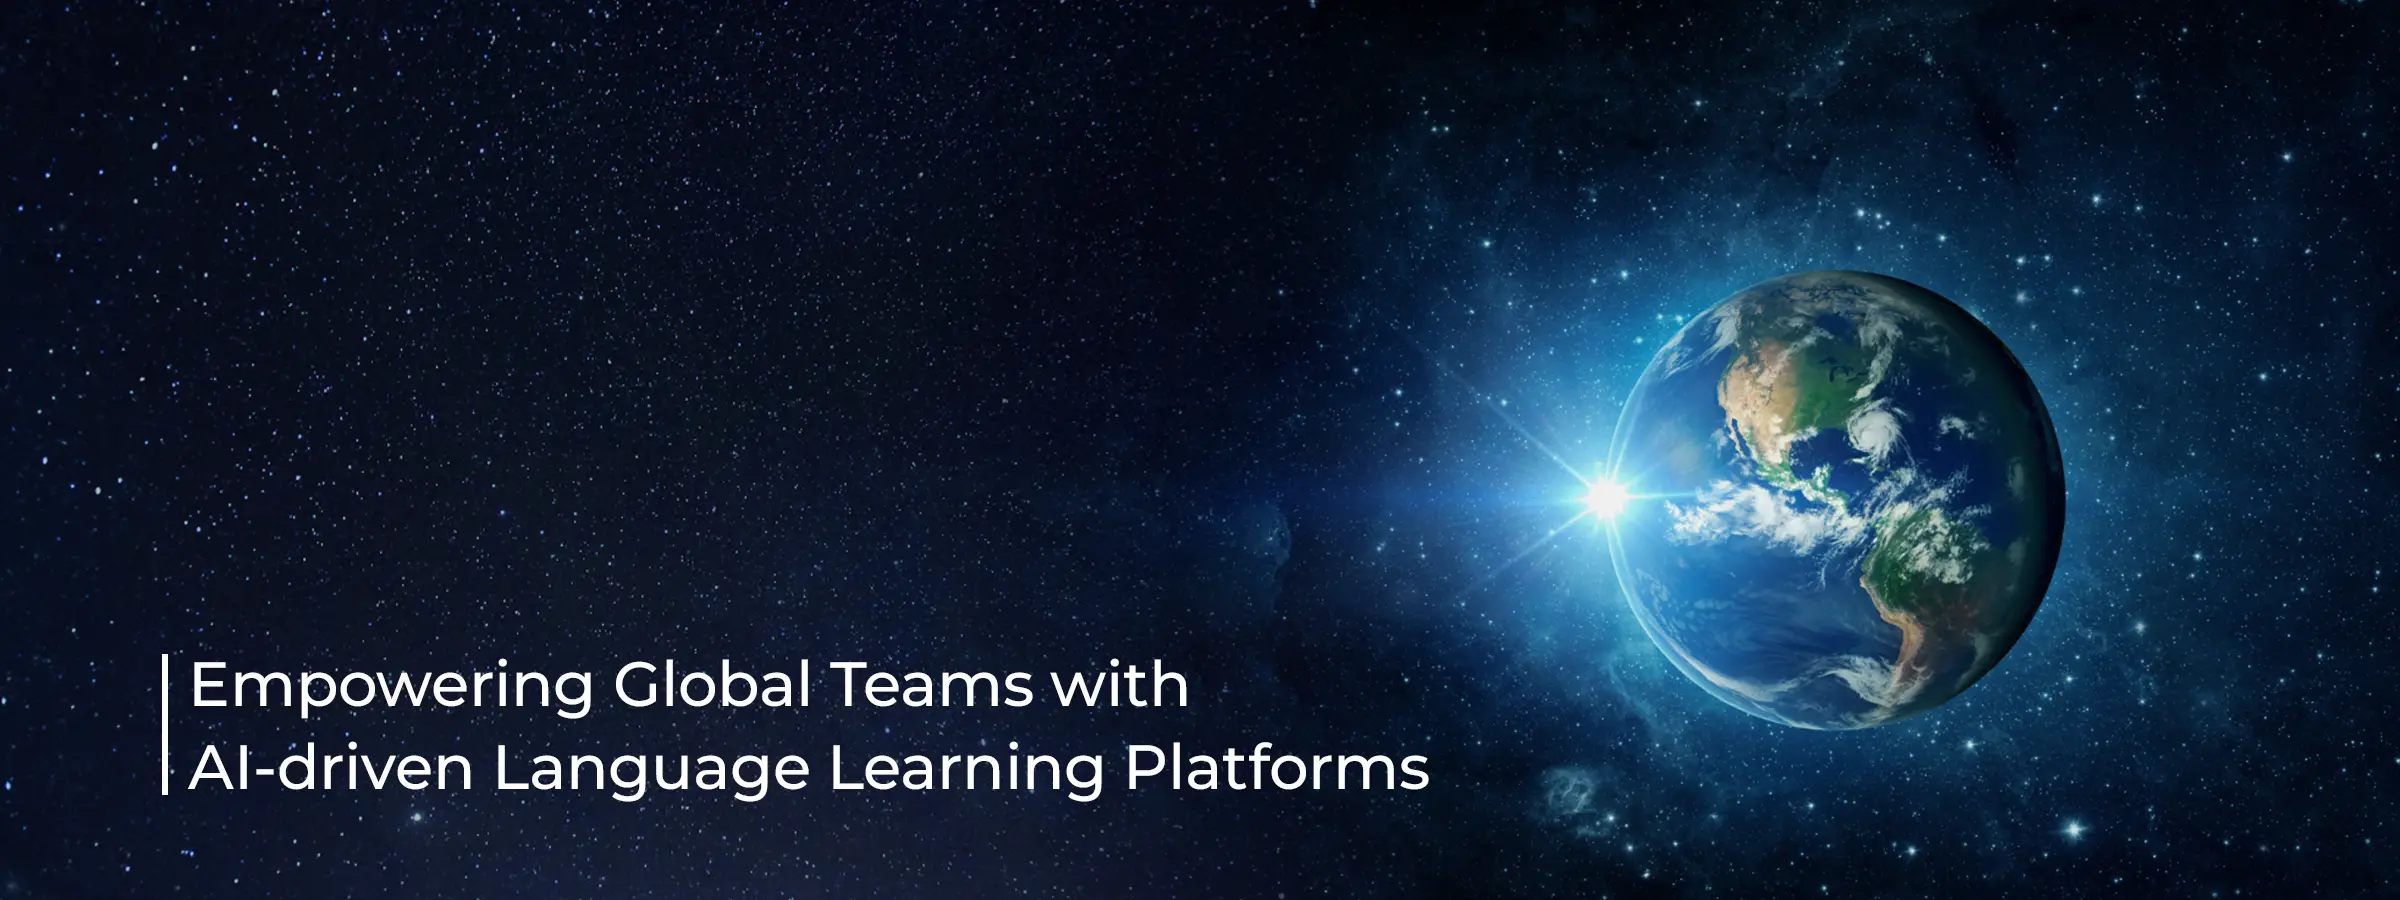 language-learning-platforms